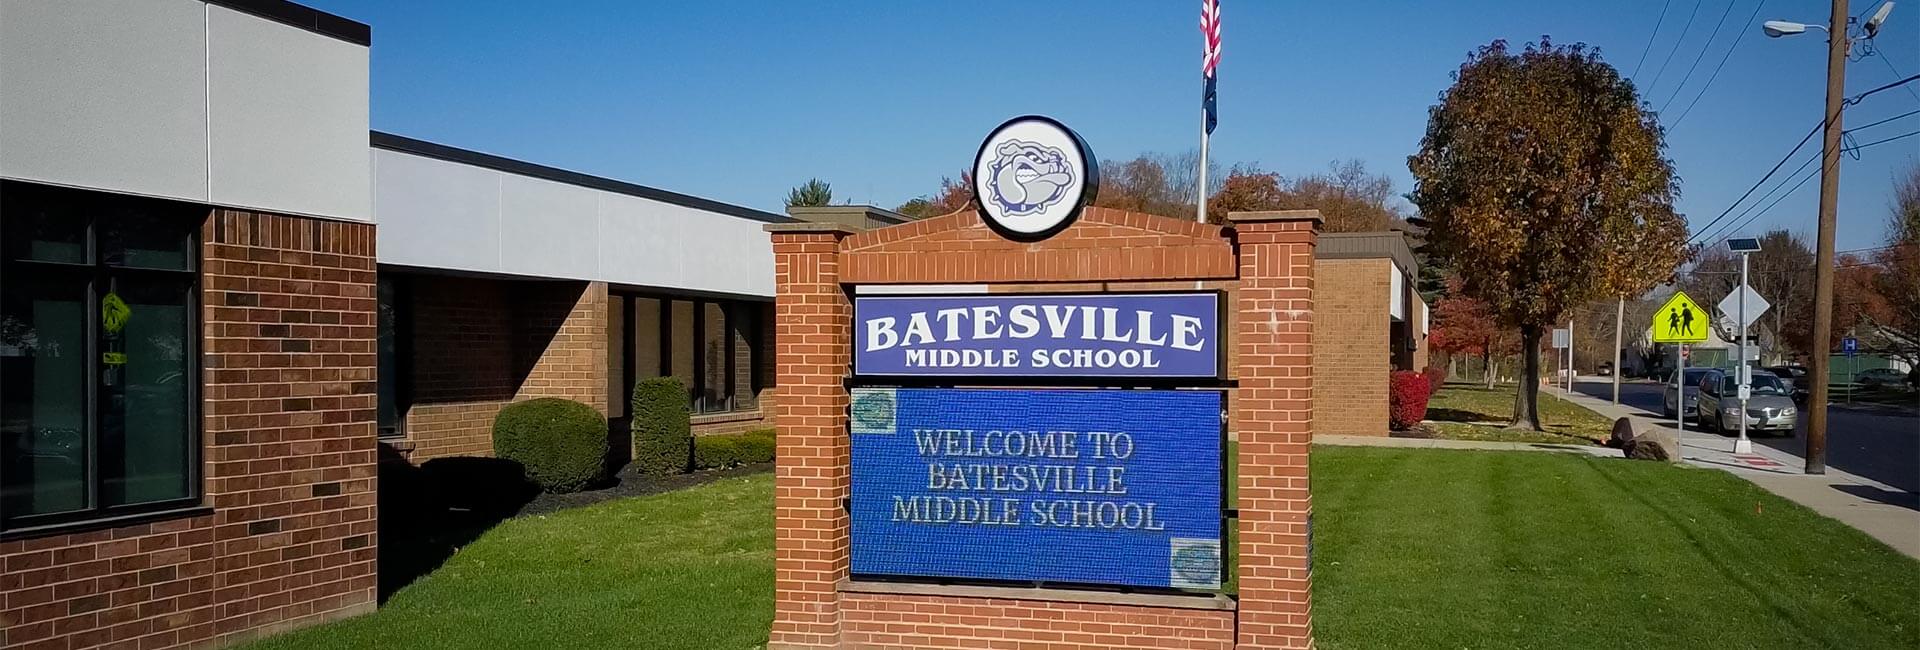 Außenansicht der Batesville Middle School